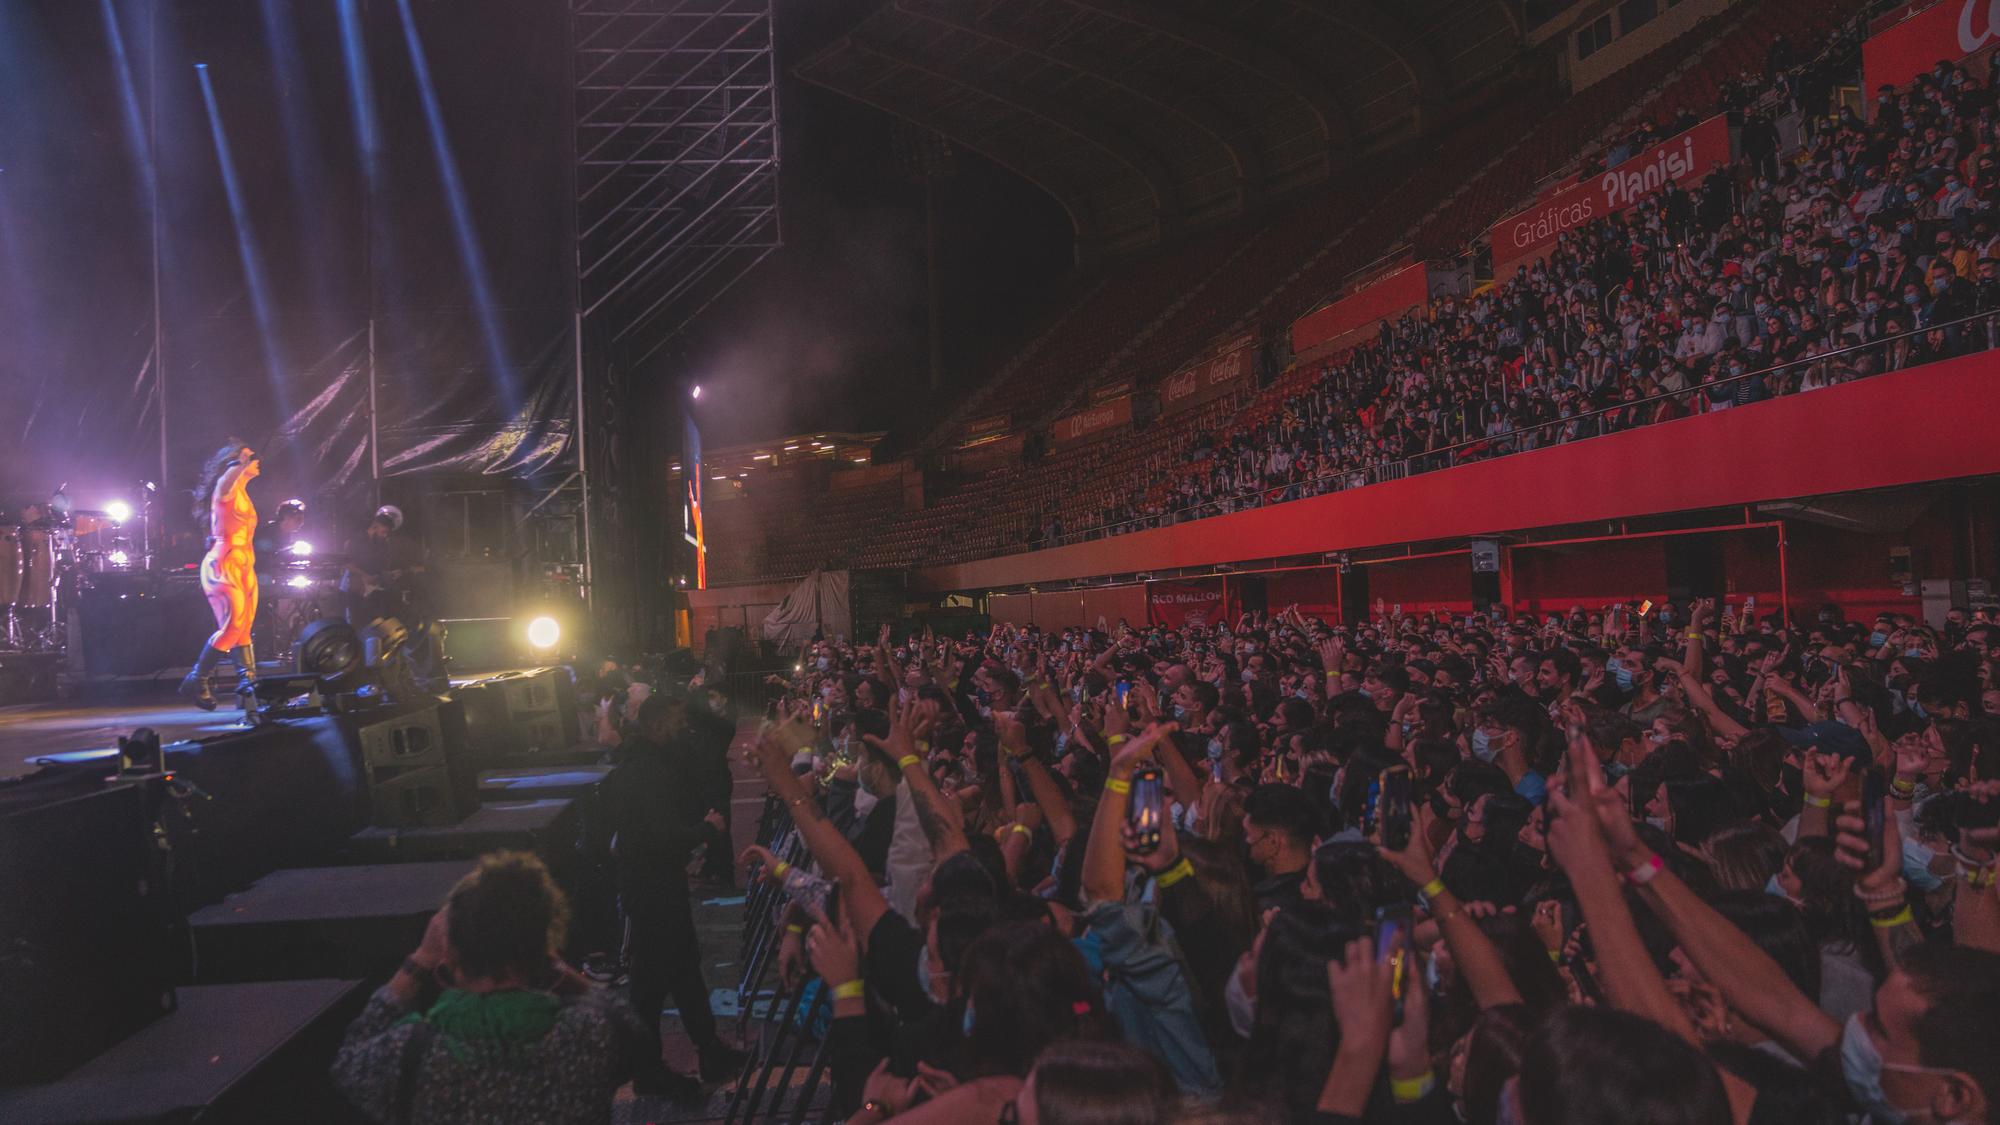 Große Bühne - Tausende Konzertbesucher im Stadion von Palma de Mallorca